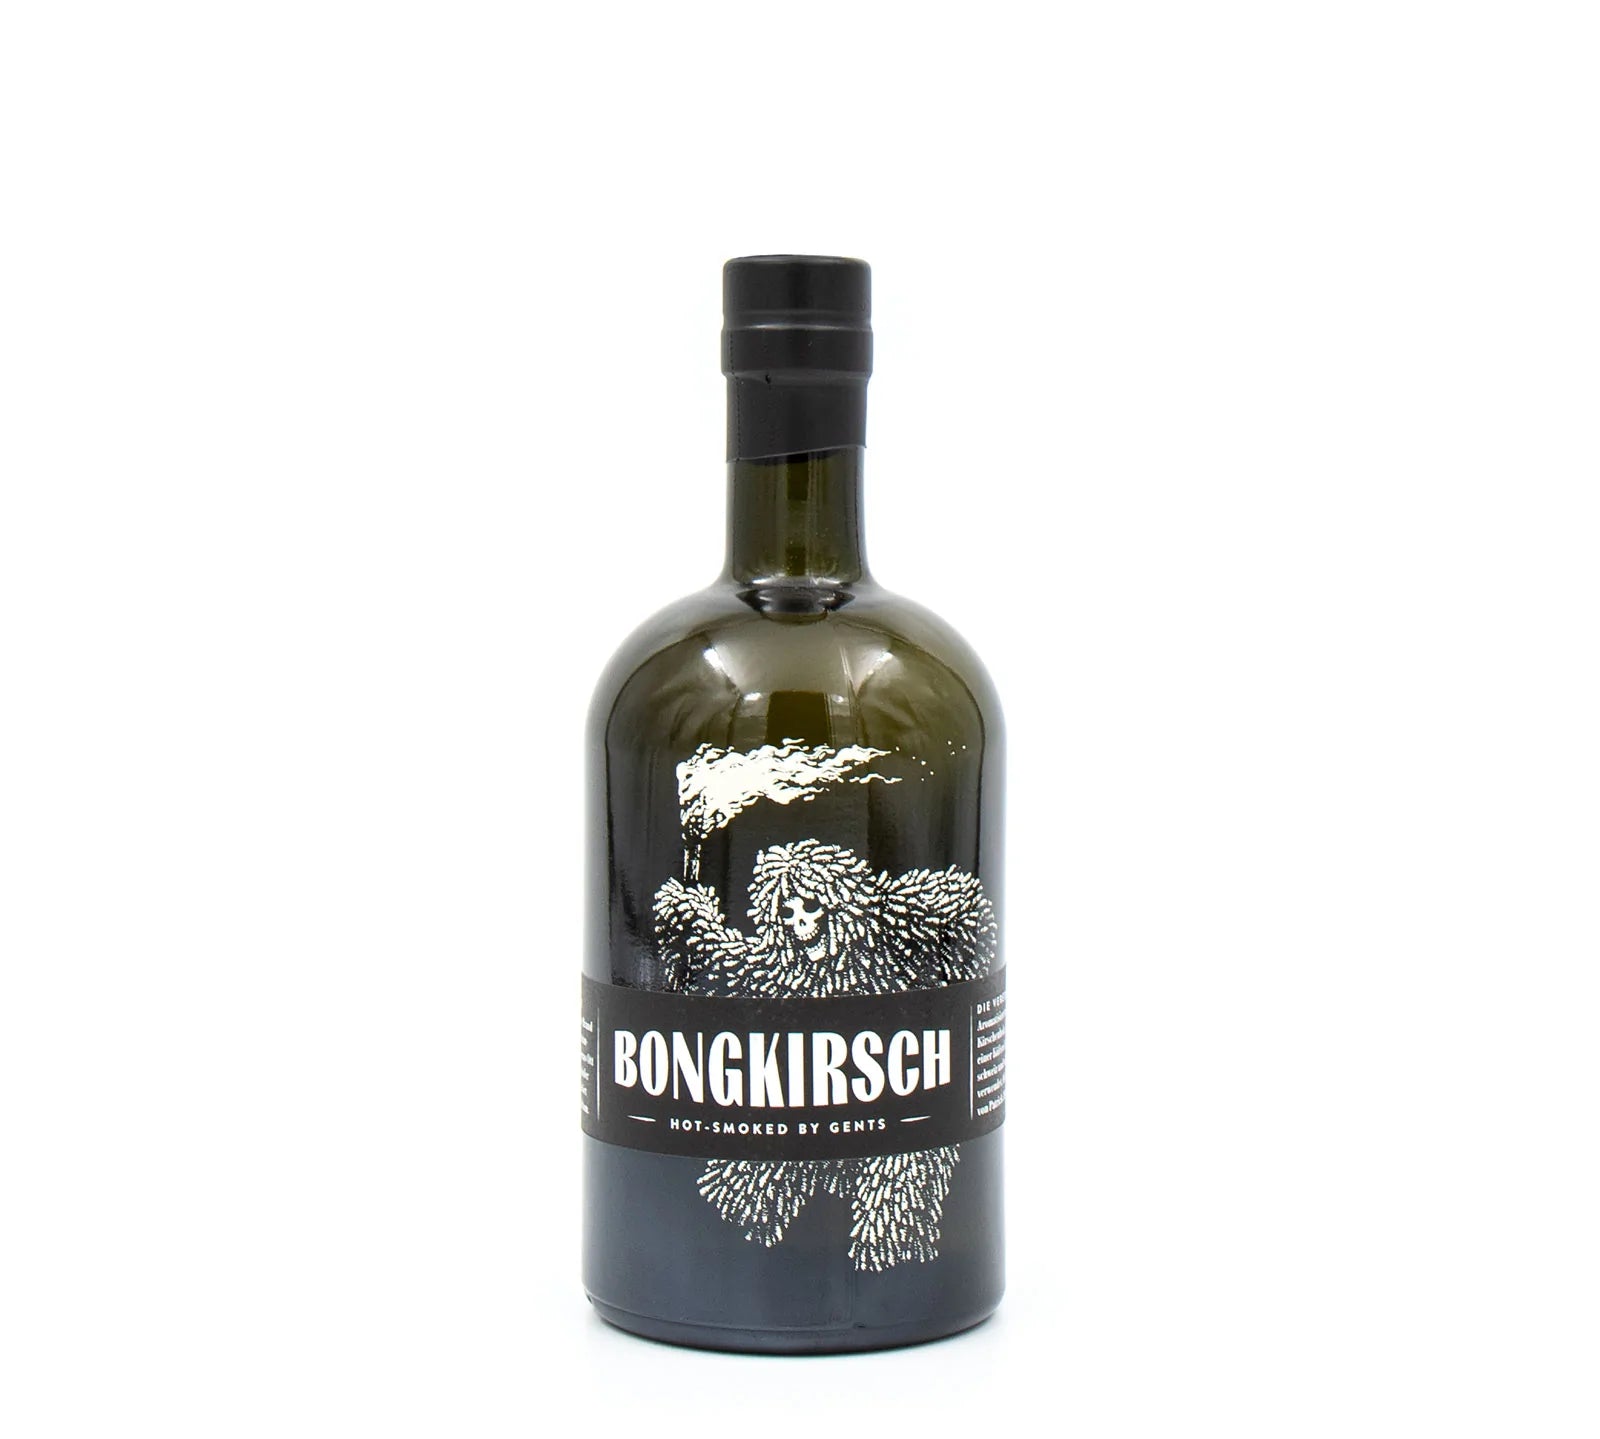 Bongkirsch – Smoky Kirsch by GENTS, 40 Vol. %, Swiss Made, LABEL17